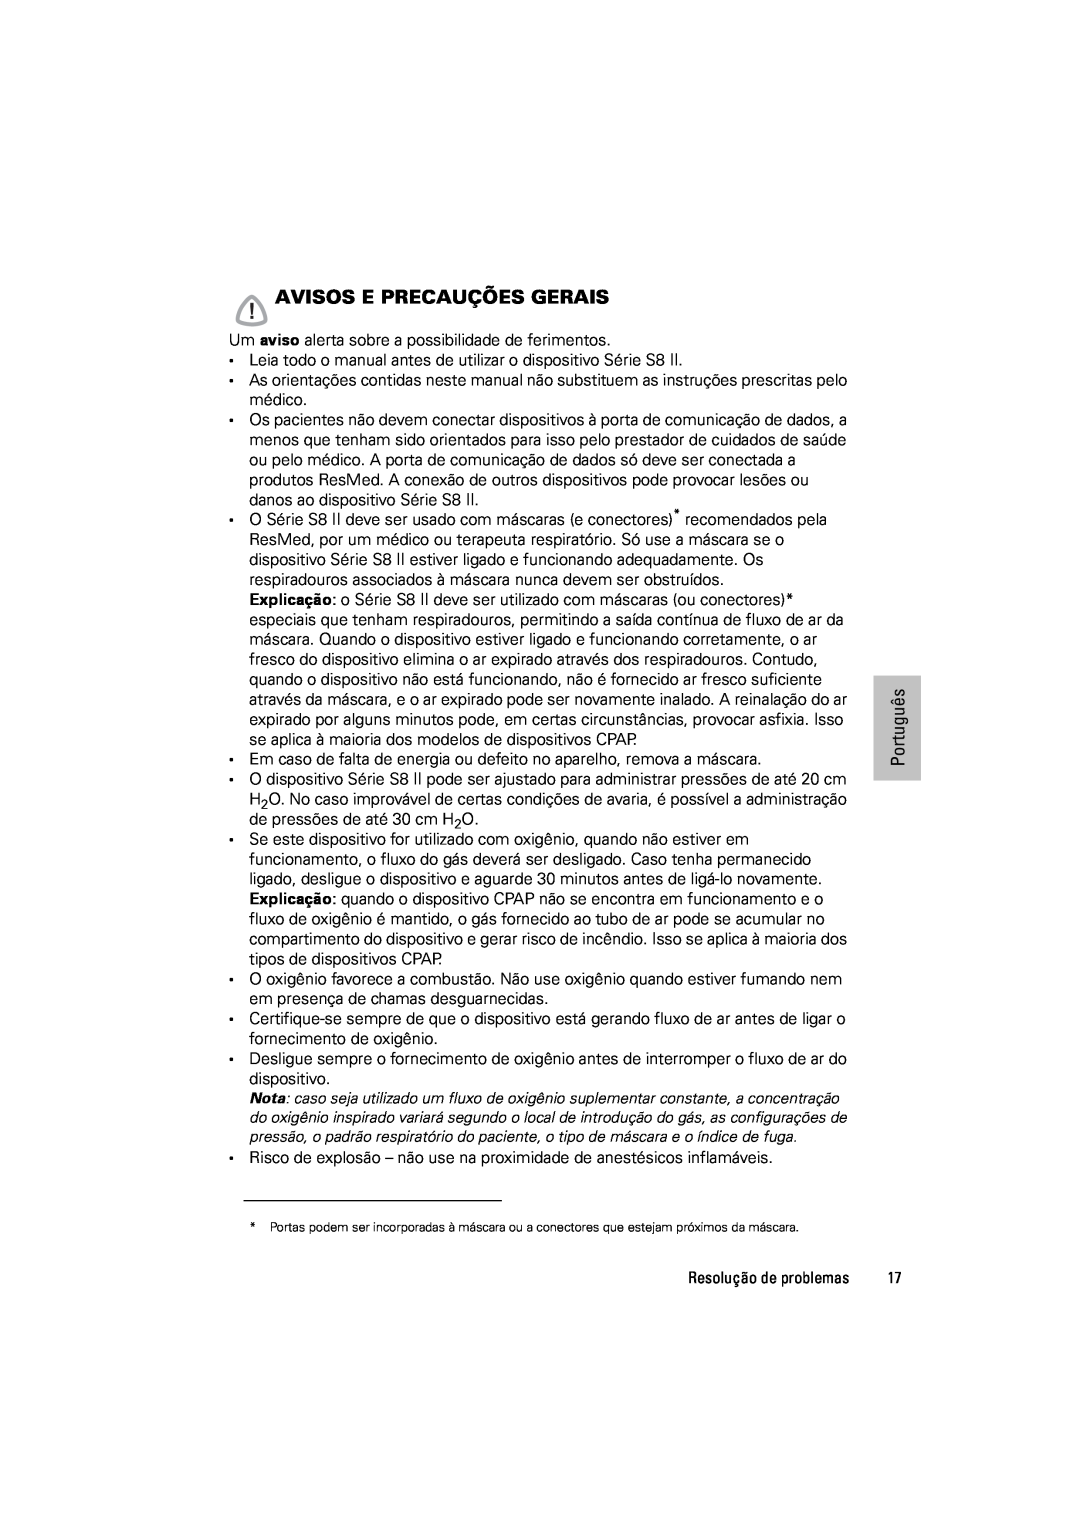 ResMed s8 manual Avisos E Precauções Gerais, Português 